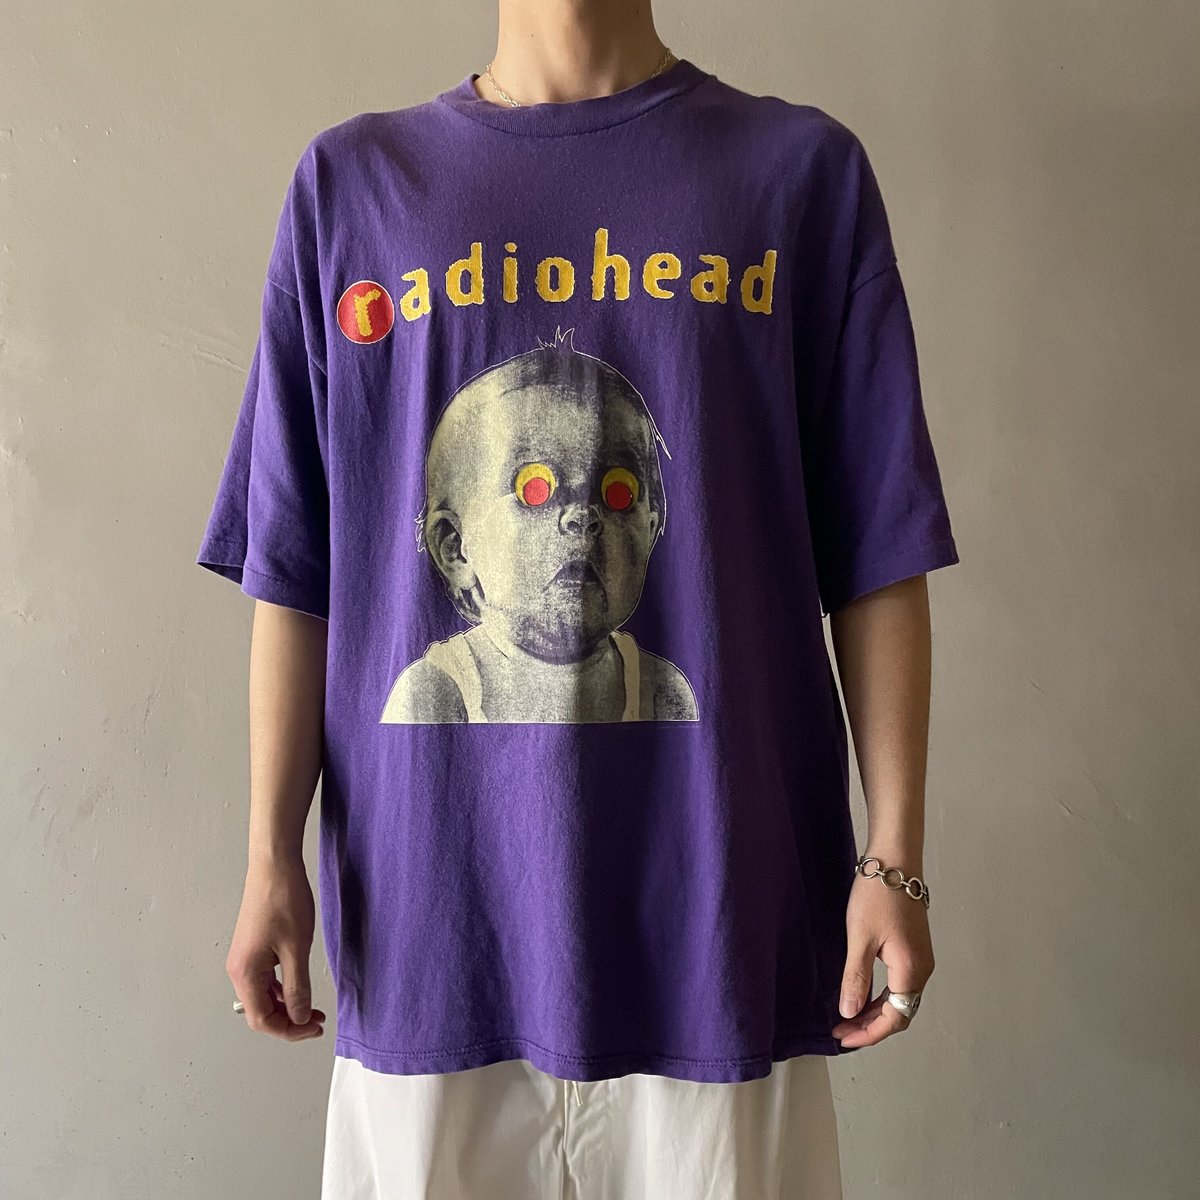 【悶絶】radiohead tシャツ Pablo honey コピーライト付き